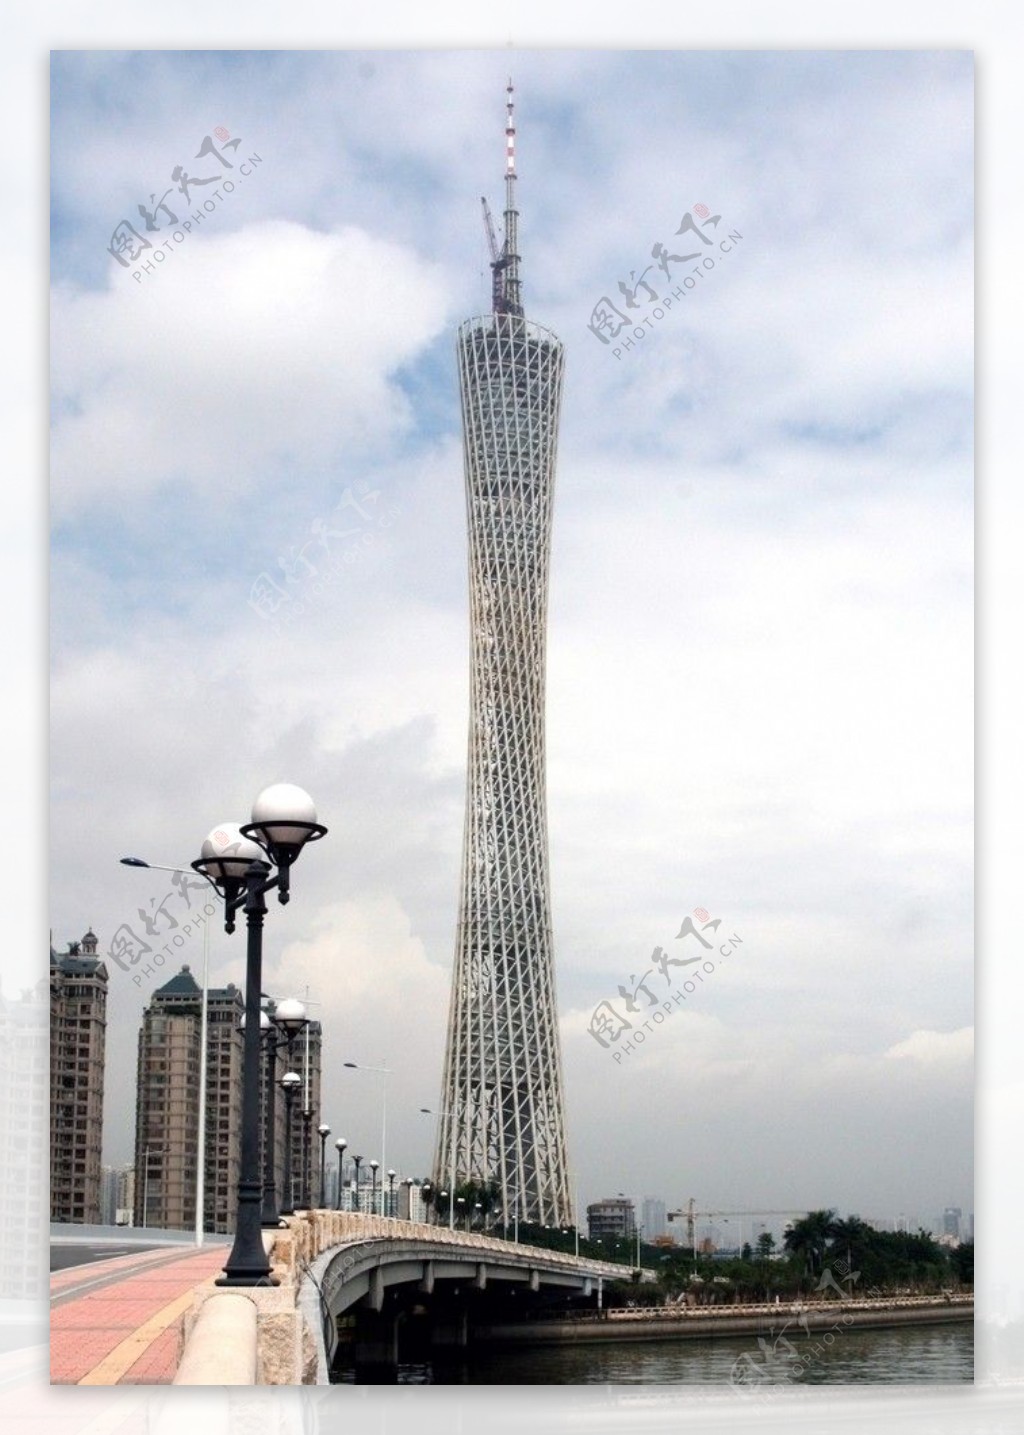 广州电视观光塔2010图片